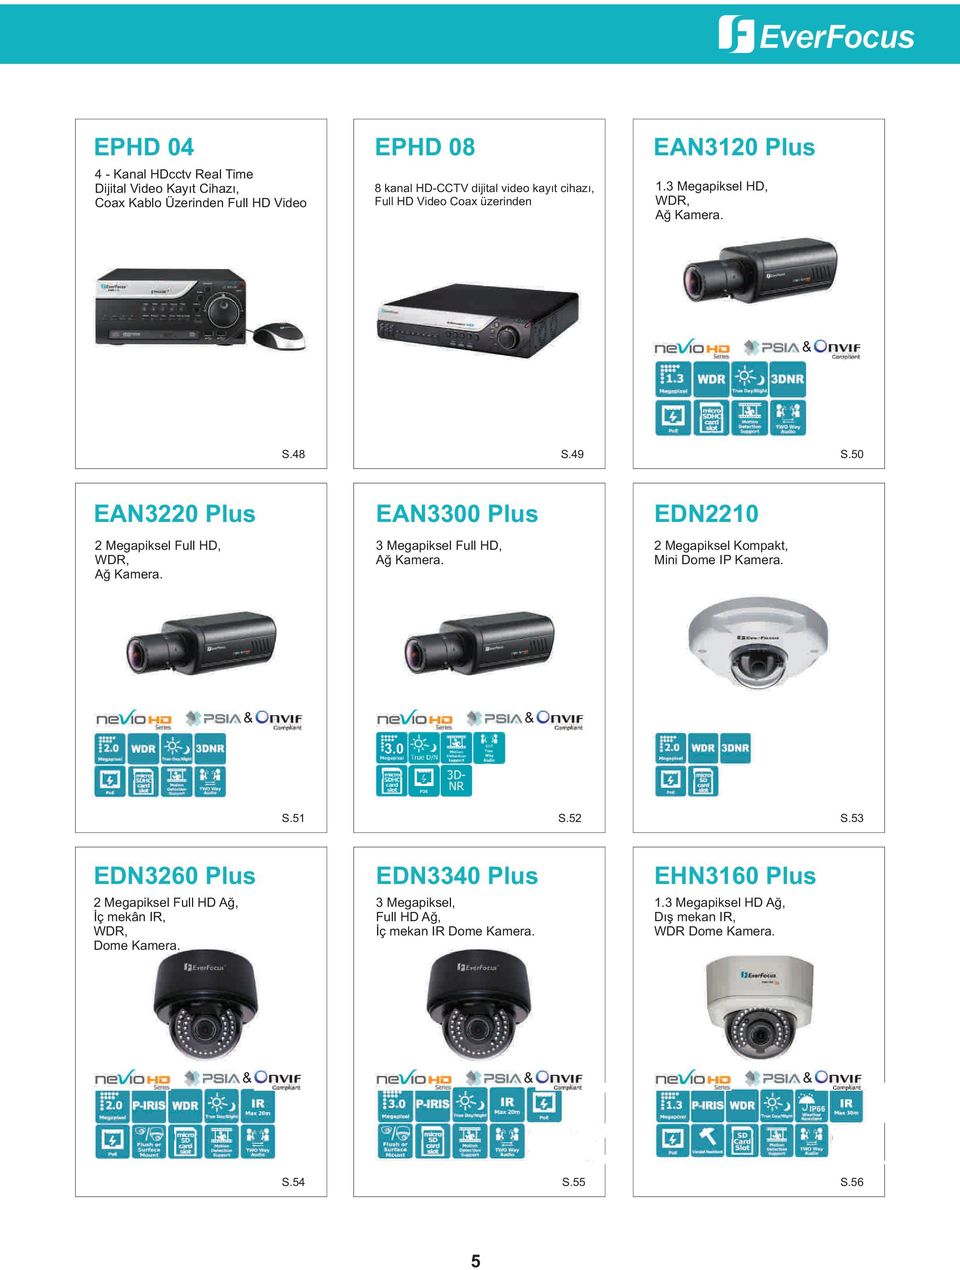 EAN3300 Plus 3 Megapiksel Full HD, Að Kamera. EDN2210 2 Megapiksel Kompakt, Mini Dome IP Kamera. & 3.0 & S.51 S.52 S.